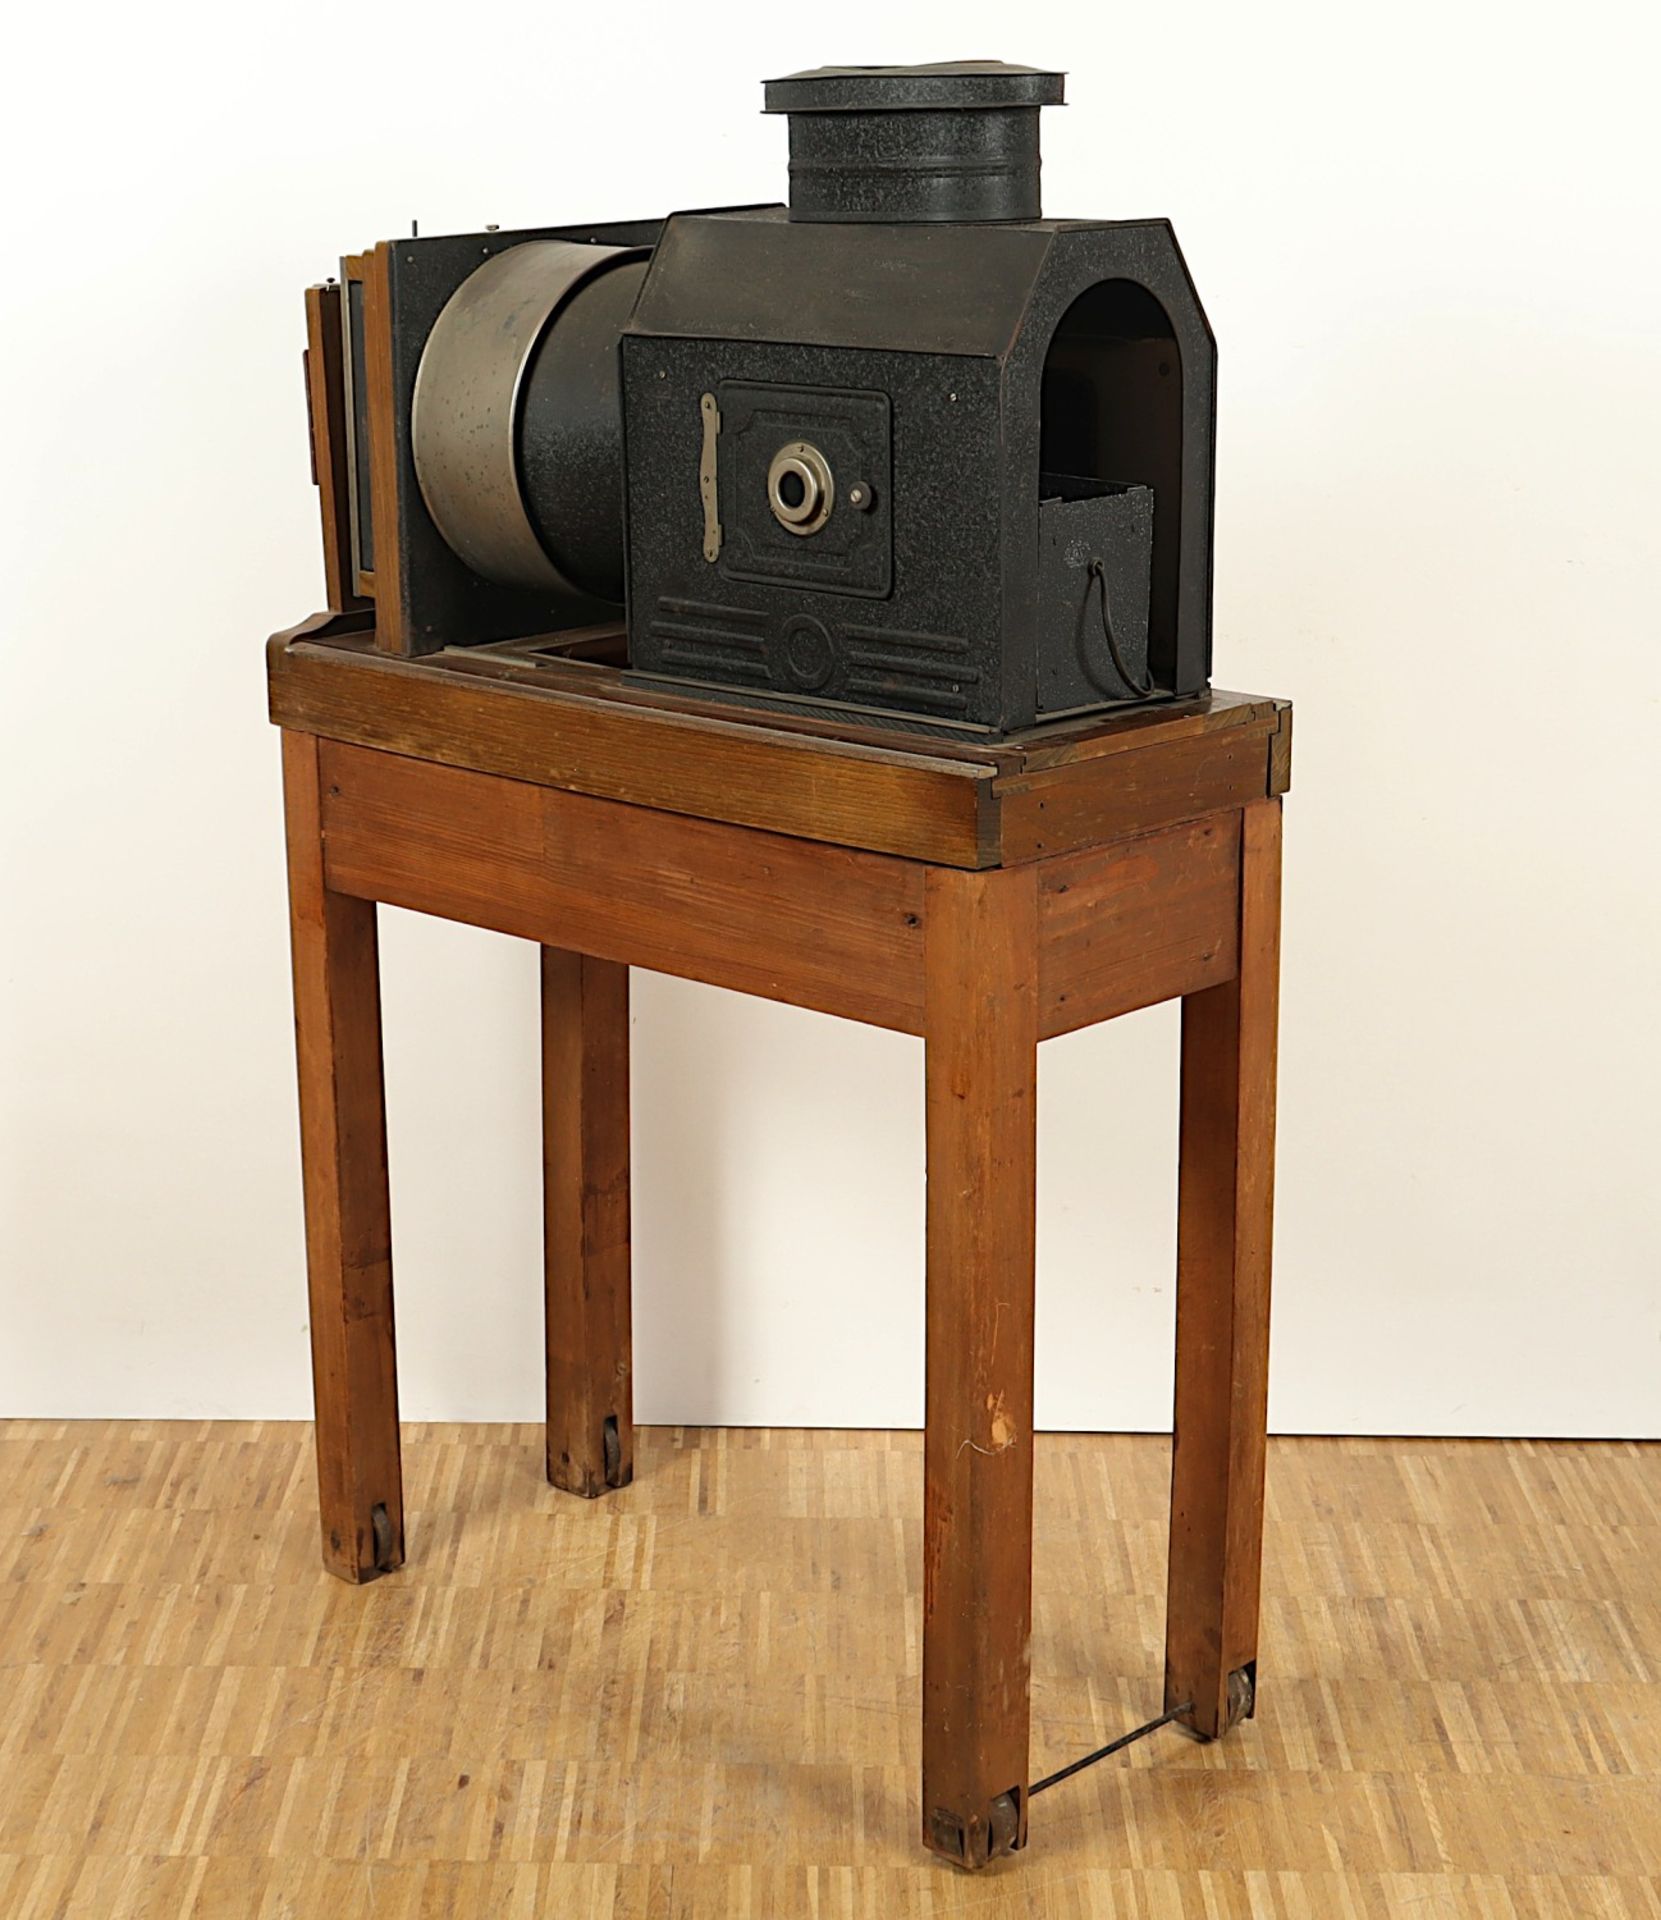 EPIDIASKOP, Projektor auf Holzgestell, H 132, L 80, DEUTSCH, um 1920 - Image 3 of 3